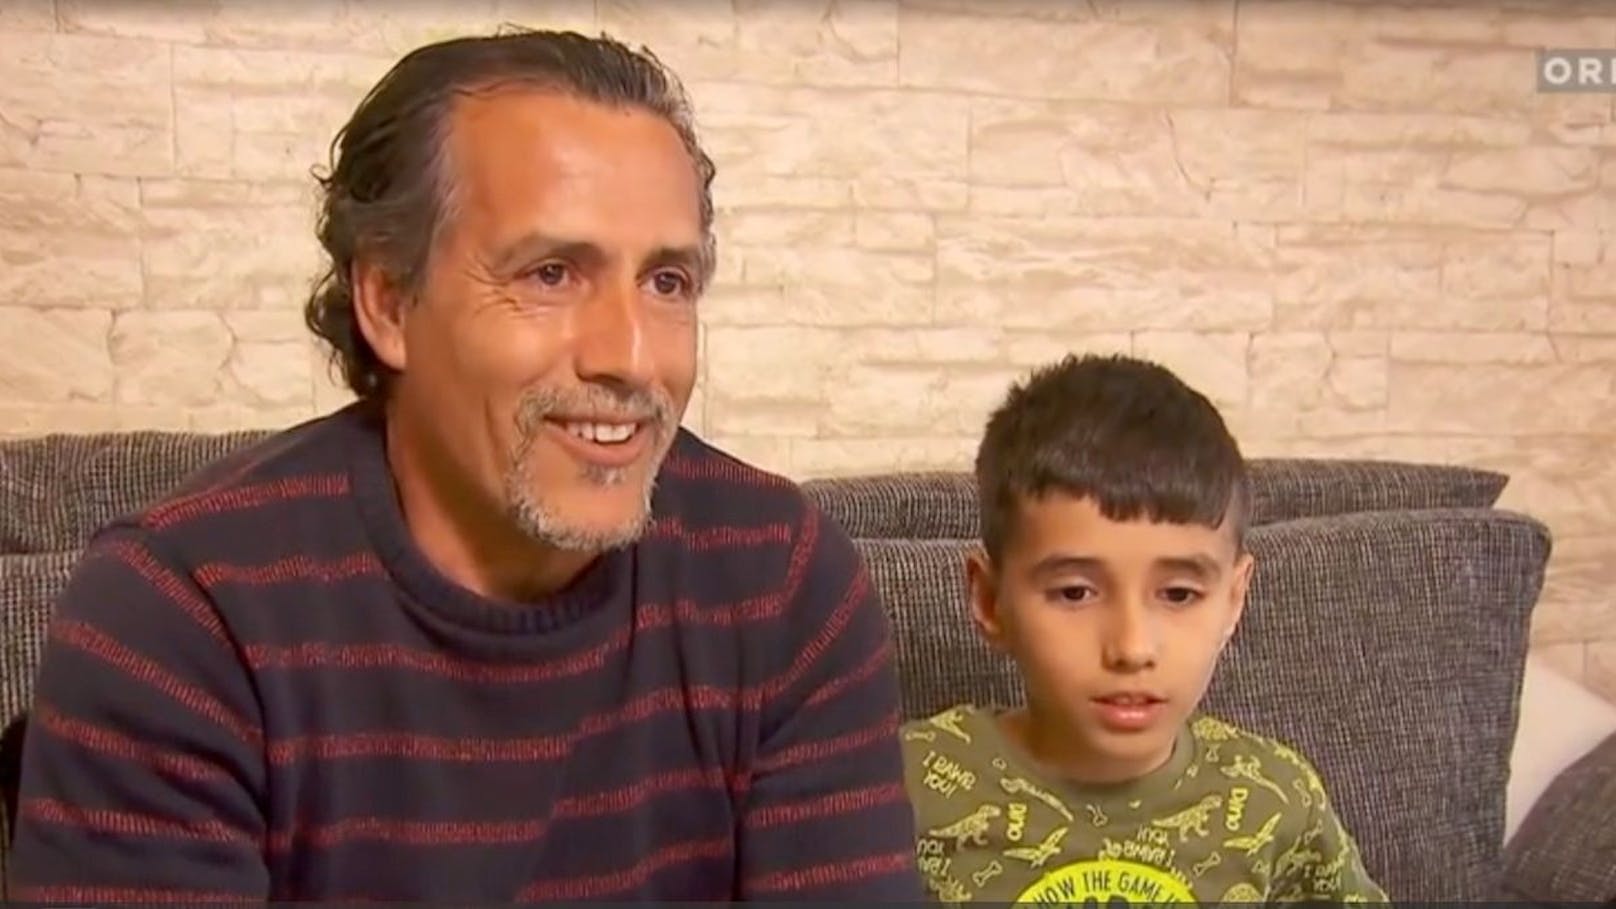 Bilel (7) ist seinem Vater Tayeb beim Vienna City Marathon ausgebüxt. Der Junge lief sieben Kilometer weit